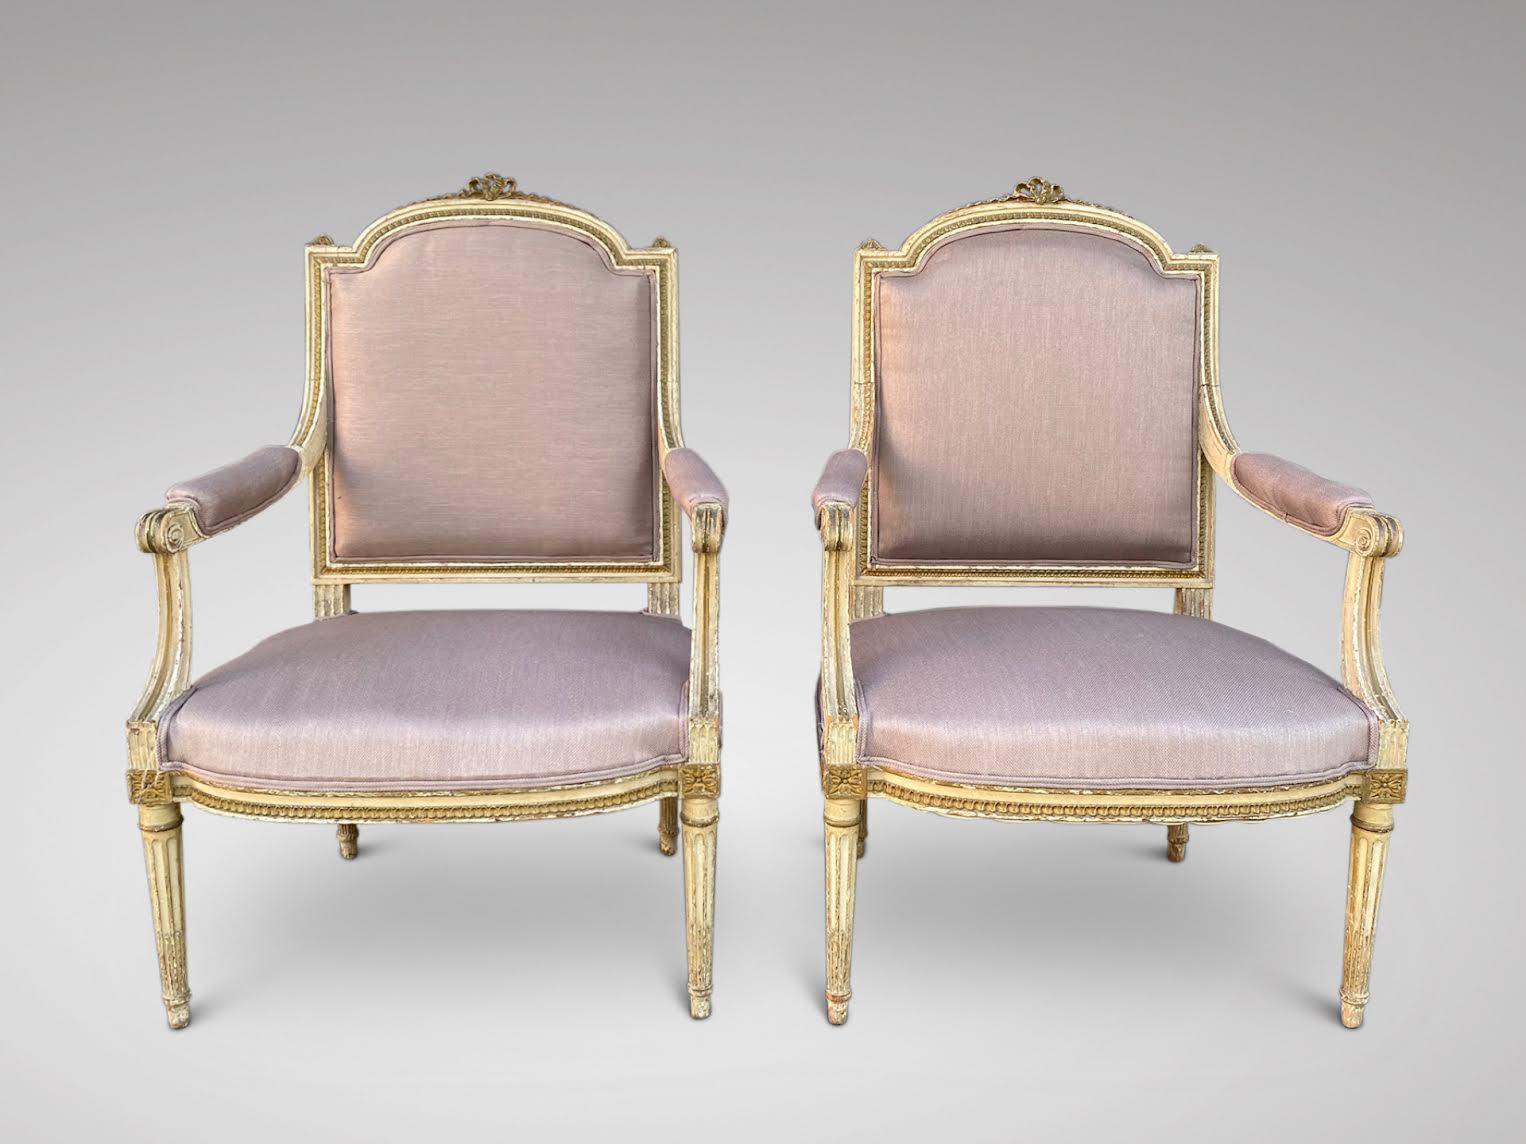 Une superbe paire de fauteuils de style Louis XVI, fin du 19ème siècle, peints, sculptés et rembourrés. Boiseries d'origine sculptées de couleur crème, garniture d'origine en crin de cheval, couverture en toile de jute et nouveau rembourrage en